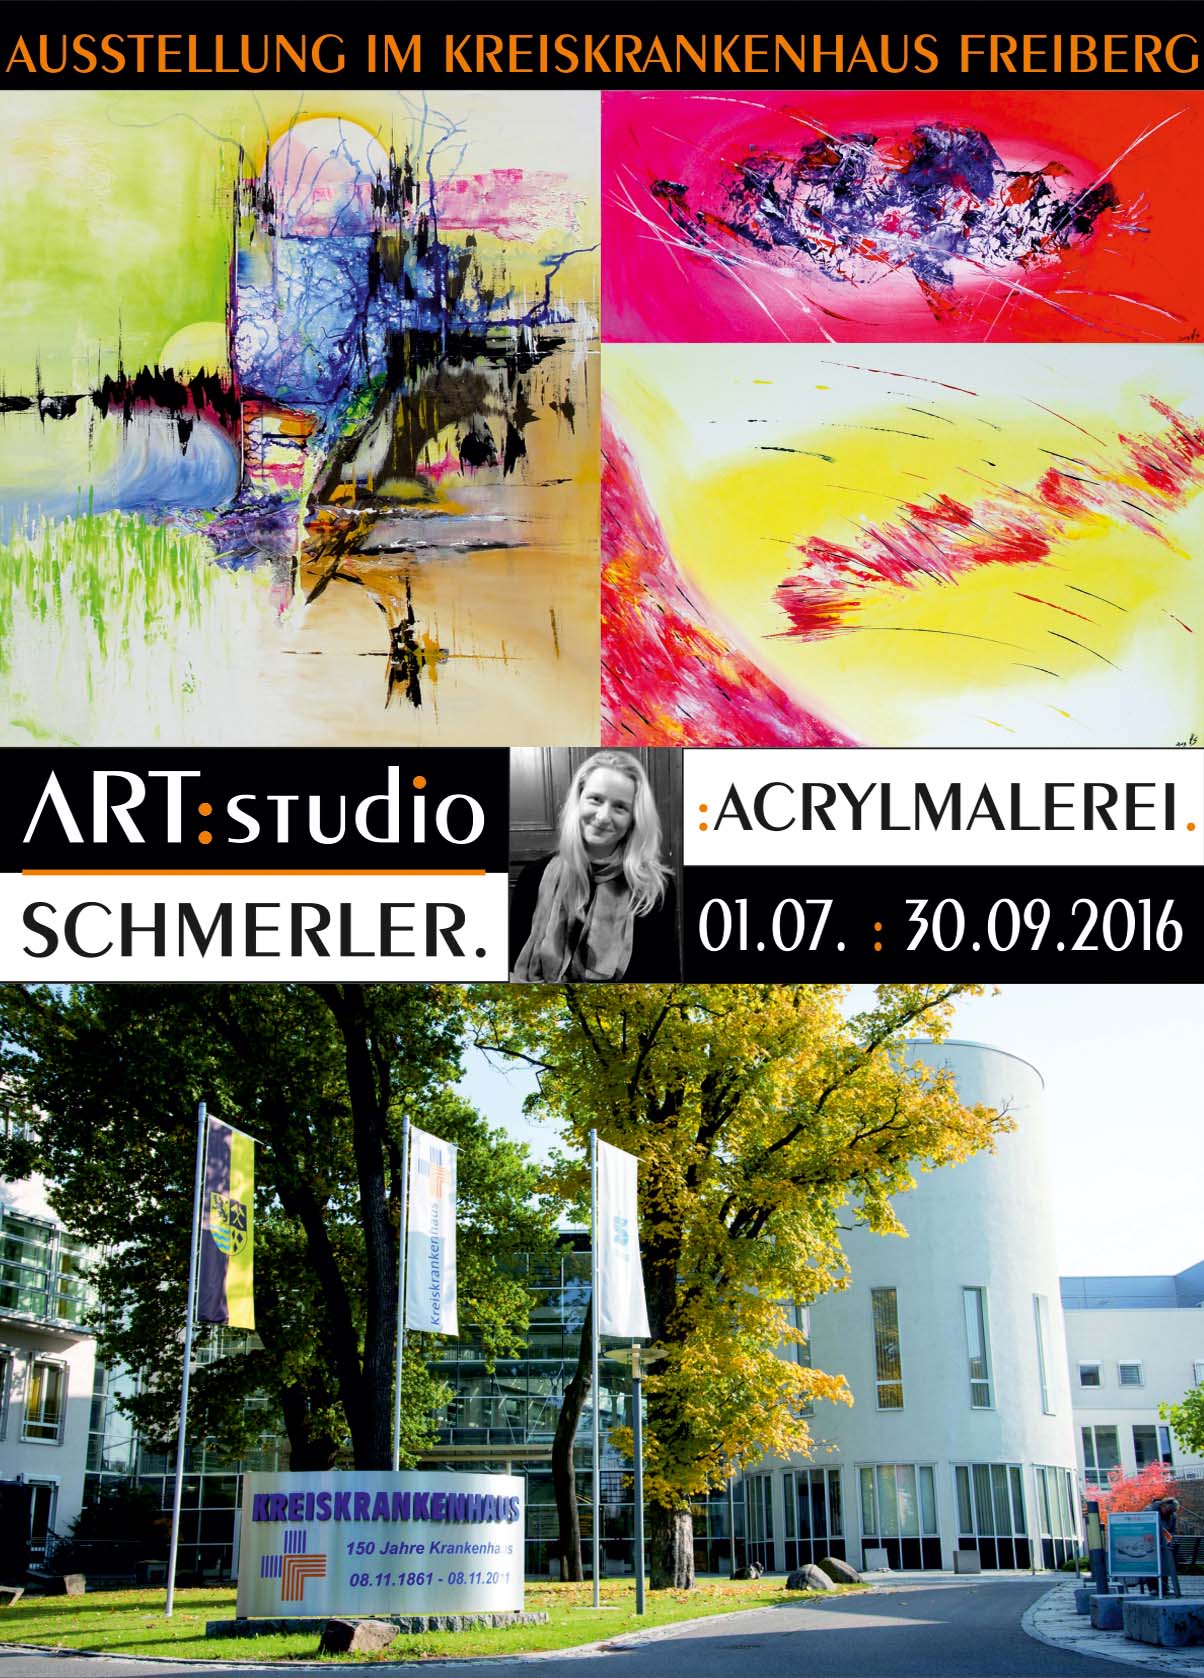 (c) Artstudio-schmerler.de